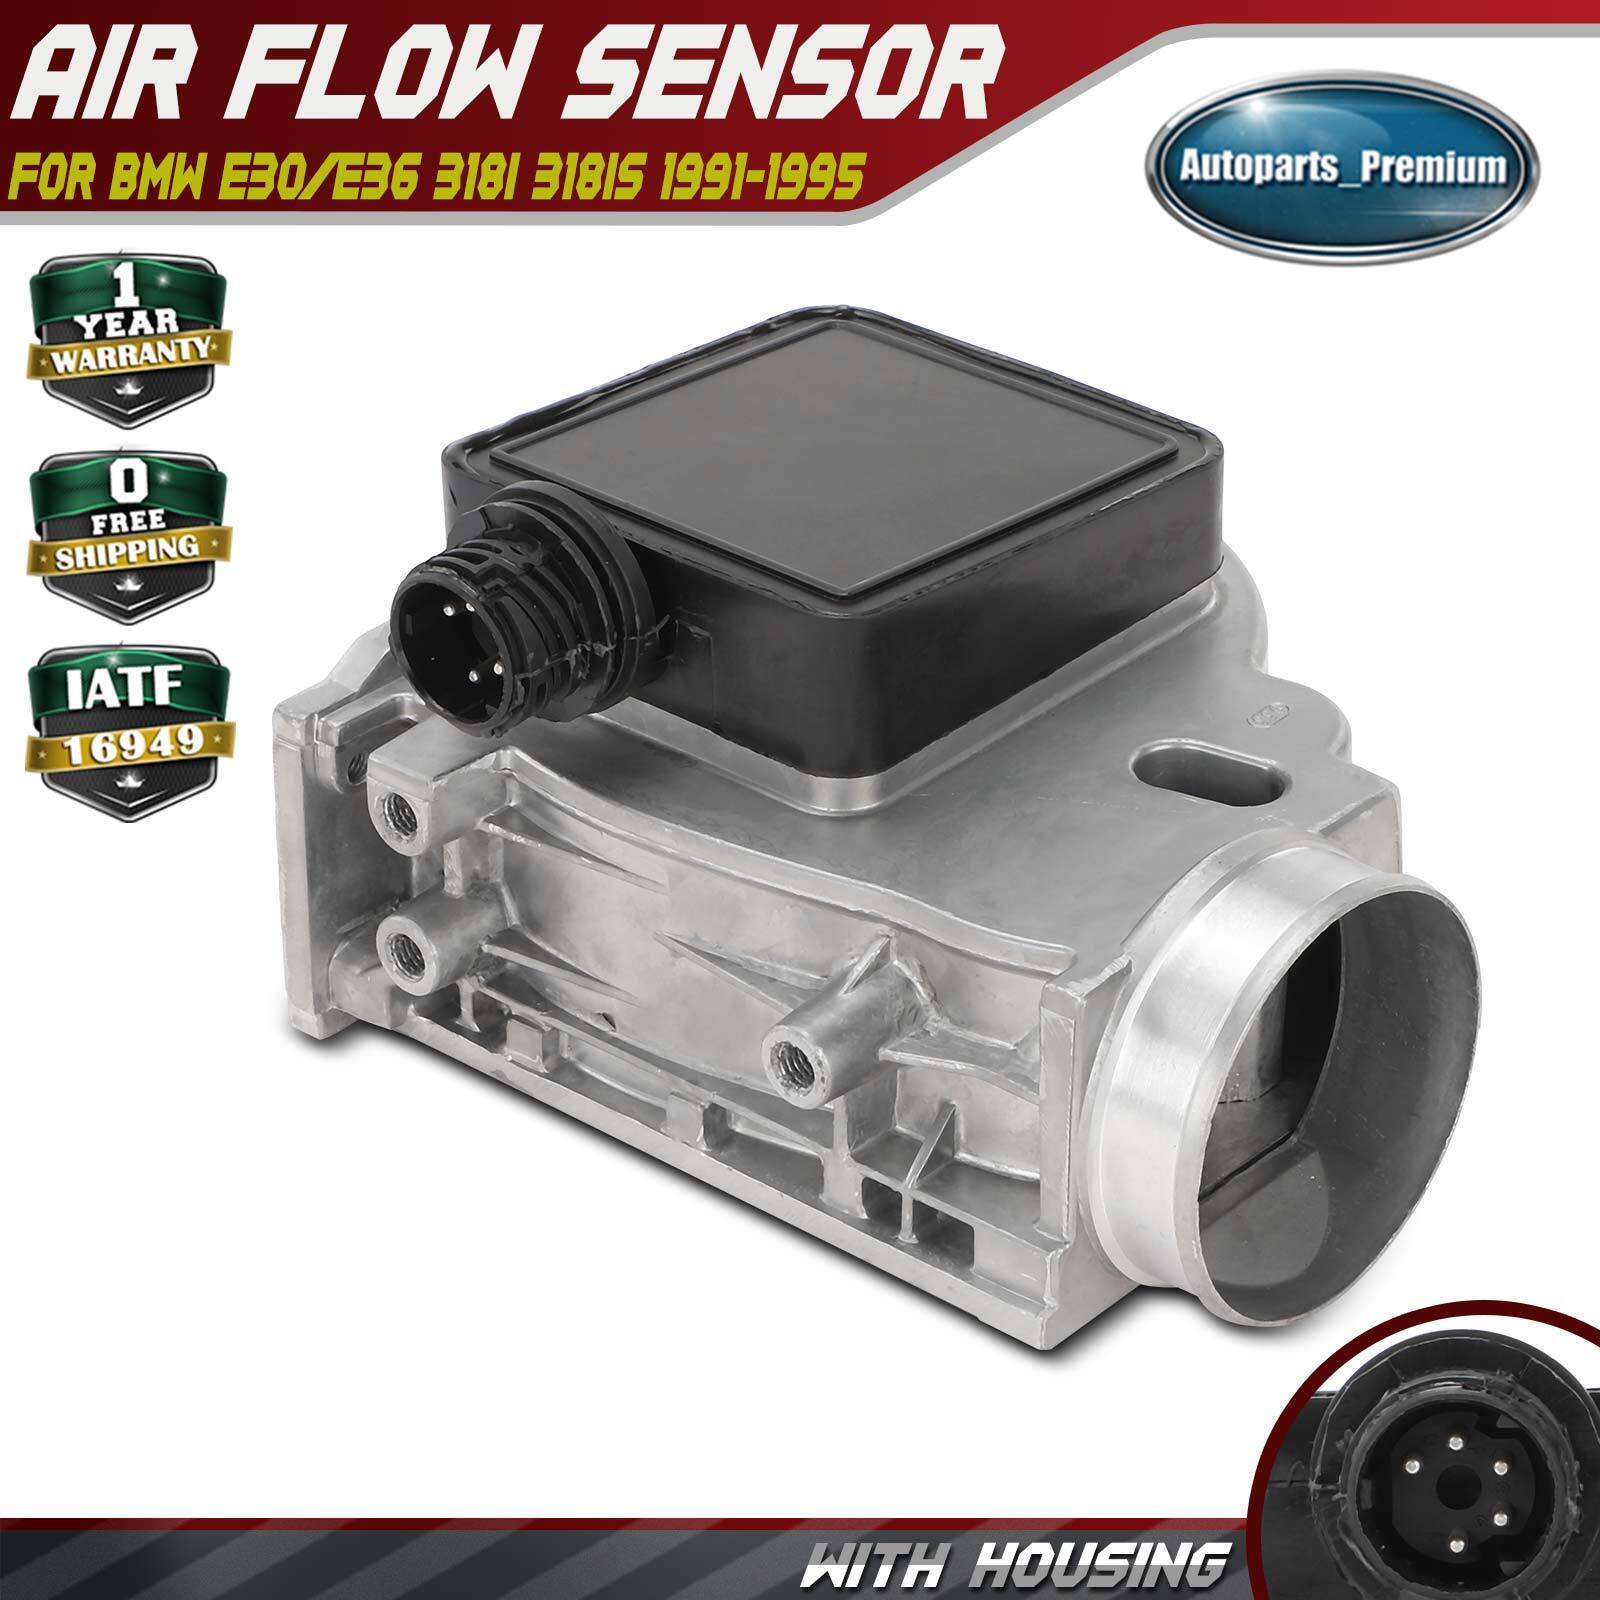 Mass Air Flow Sensor w/ Housing for BMW E30/E36 318i 318is 1991-1995 E36 318ti